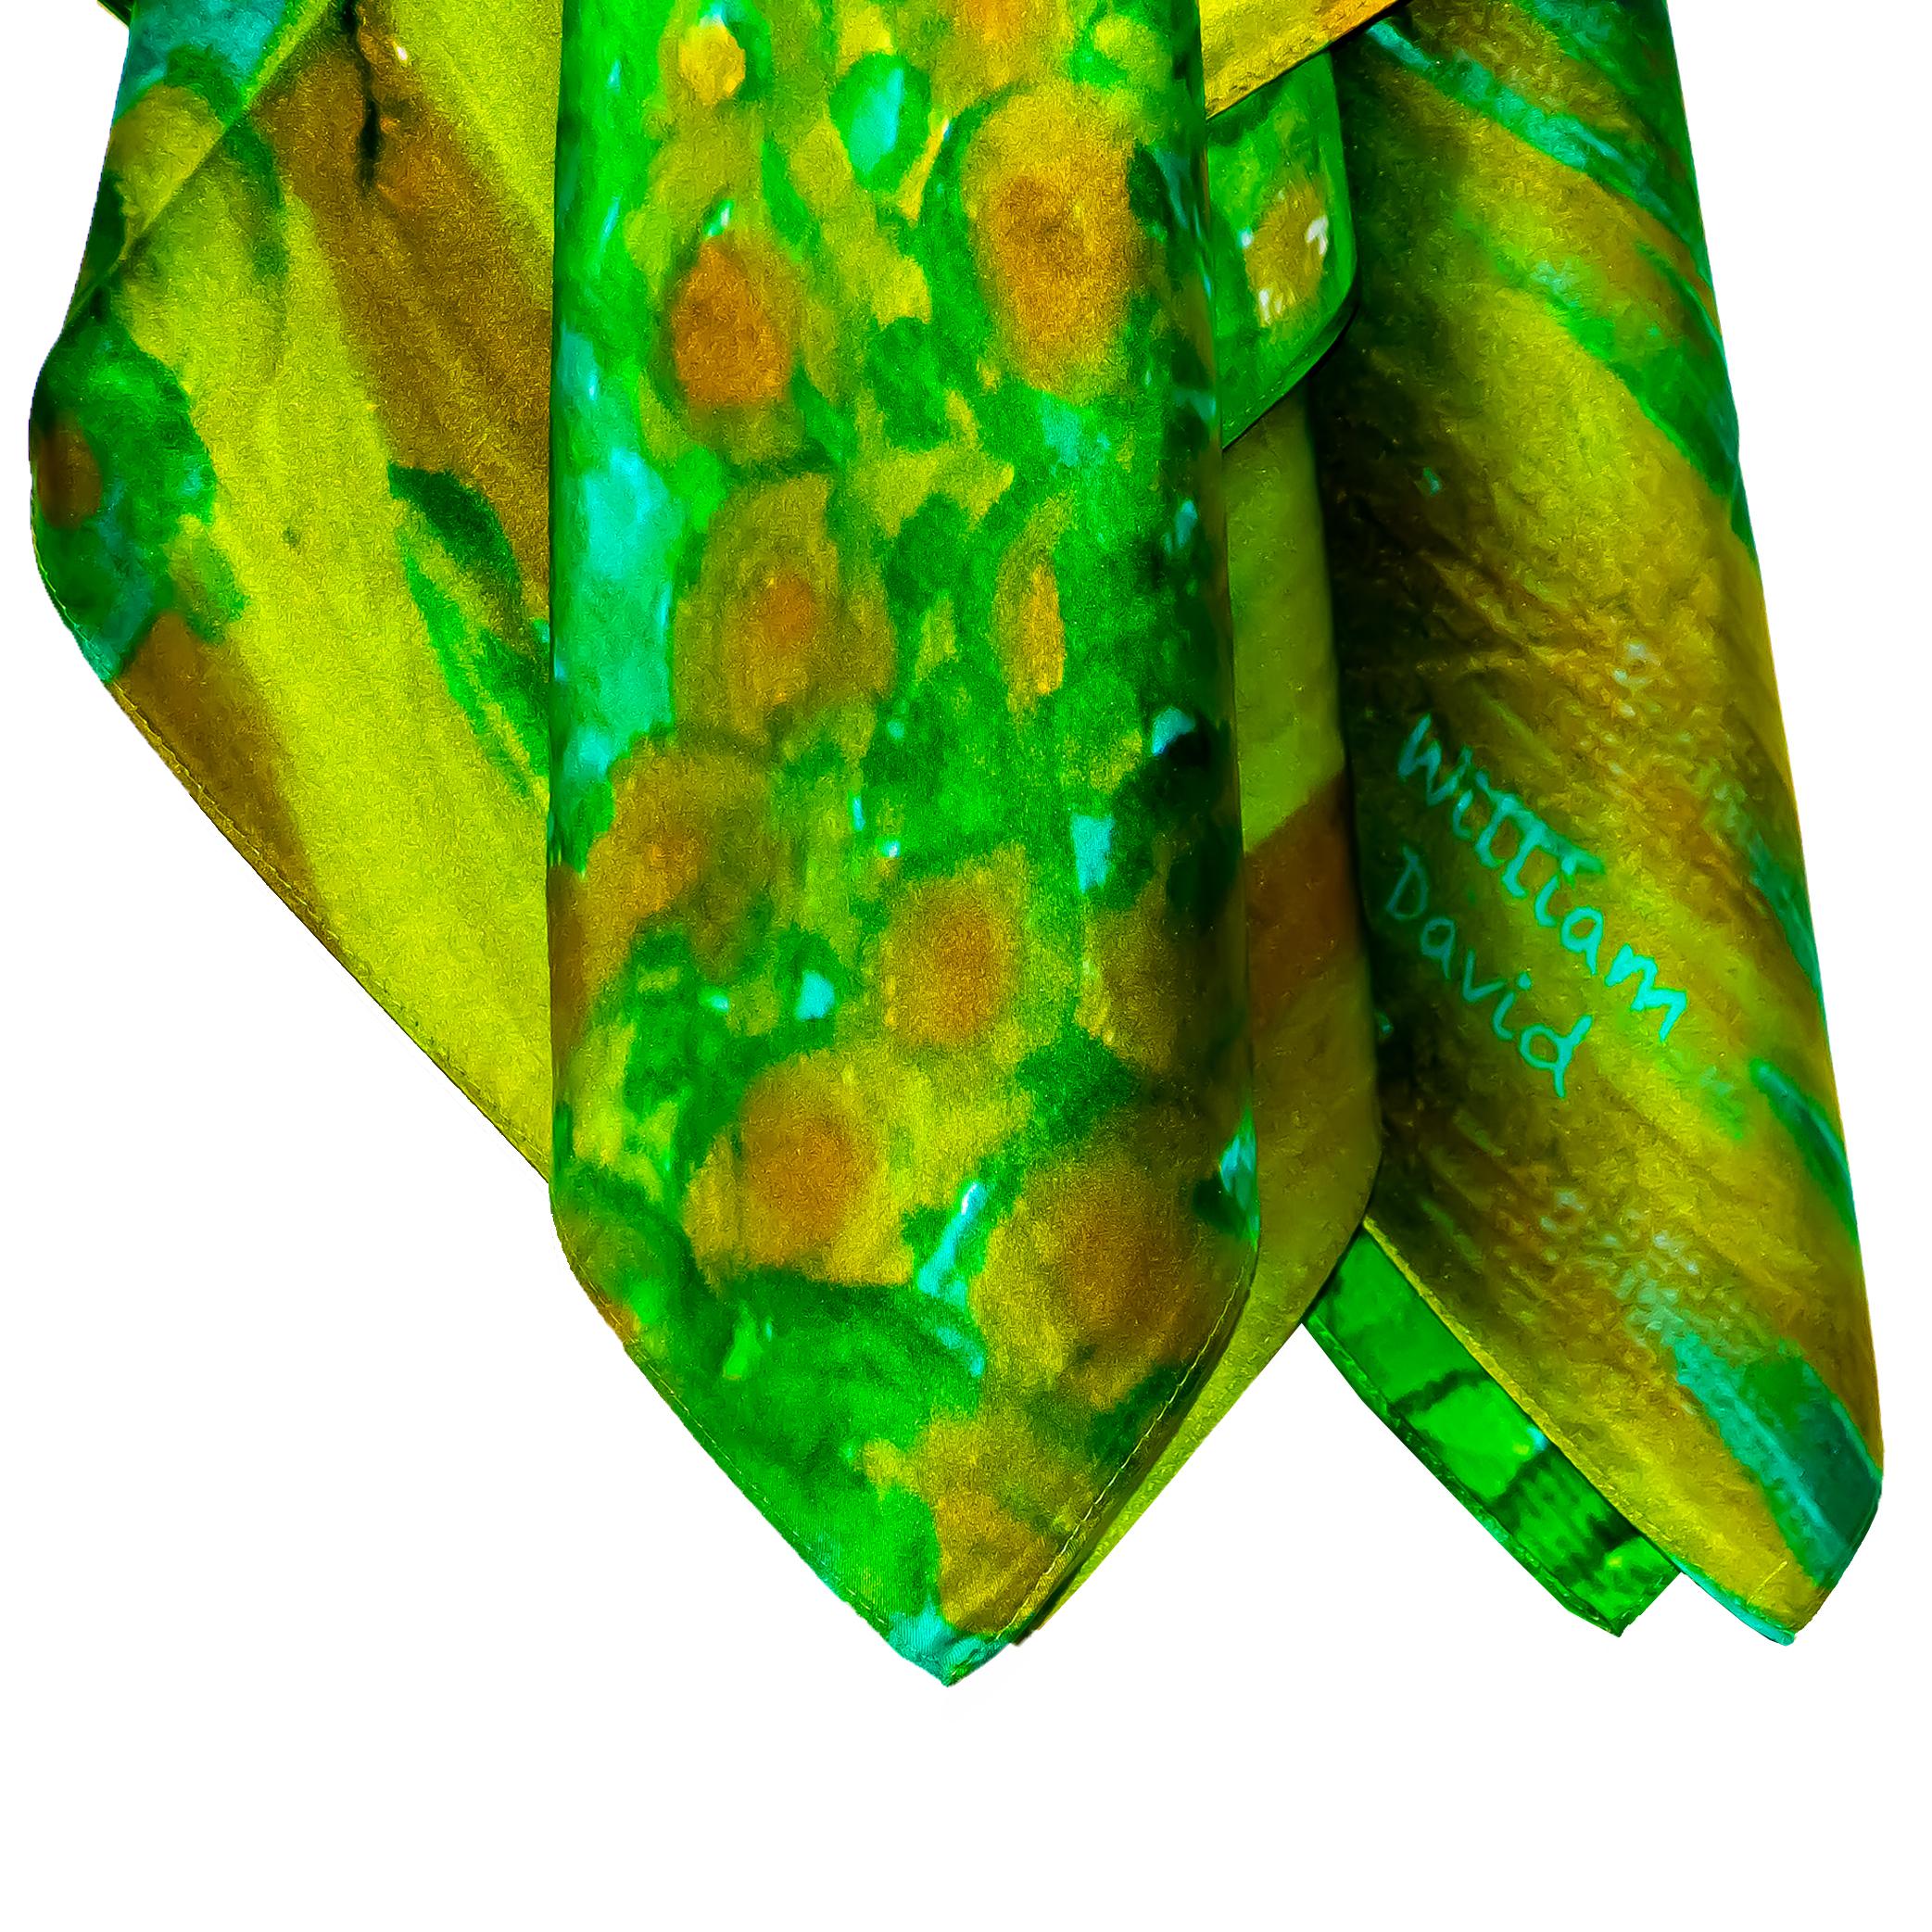 Pour les amateurs de mode artistique et créative, ce foulard en soie inspiré de la peinture à l'huile est l'élément essentiel de la garde-robe. De couleur variée et de motif unique, cet accessoire distinctif fait partie d'une collection de 100